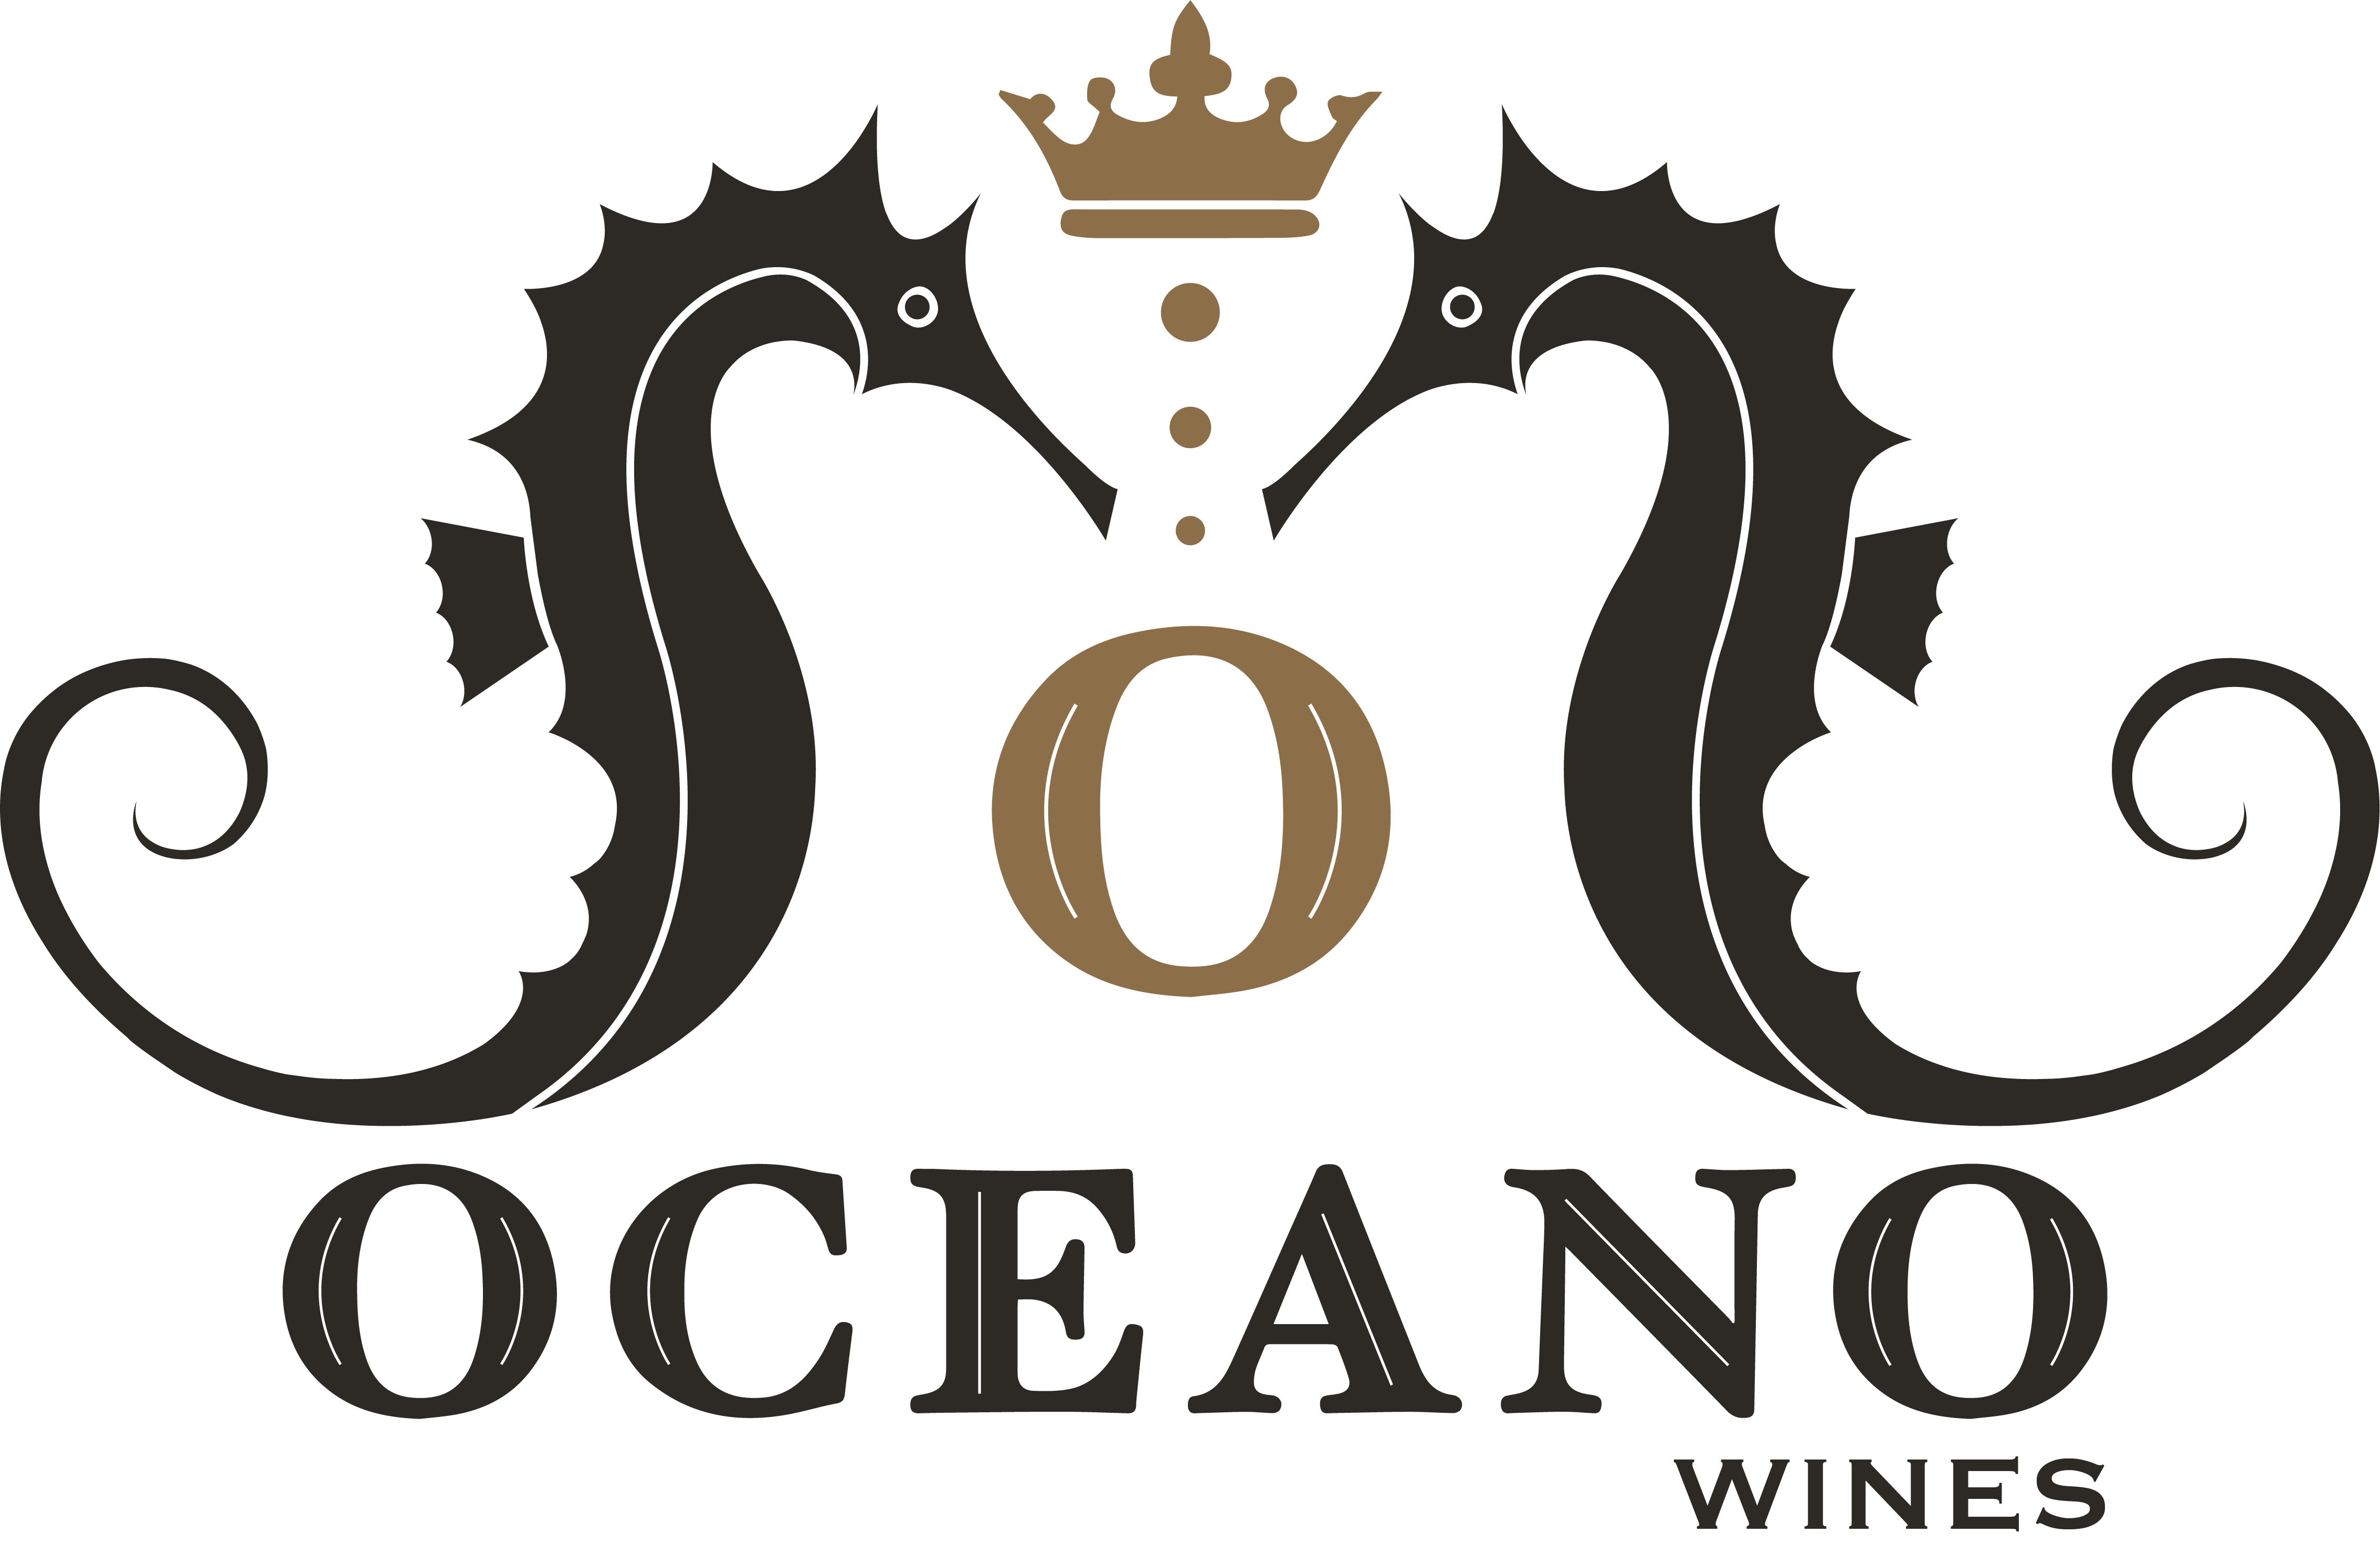 Oceano Wines